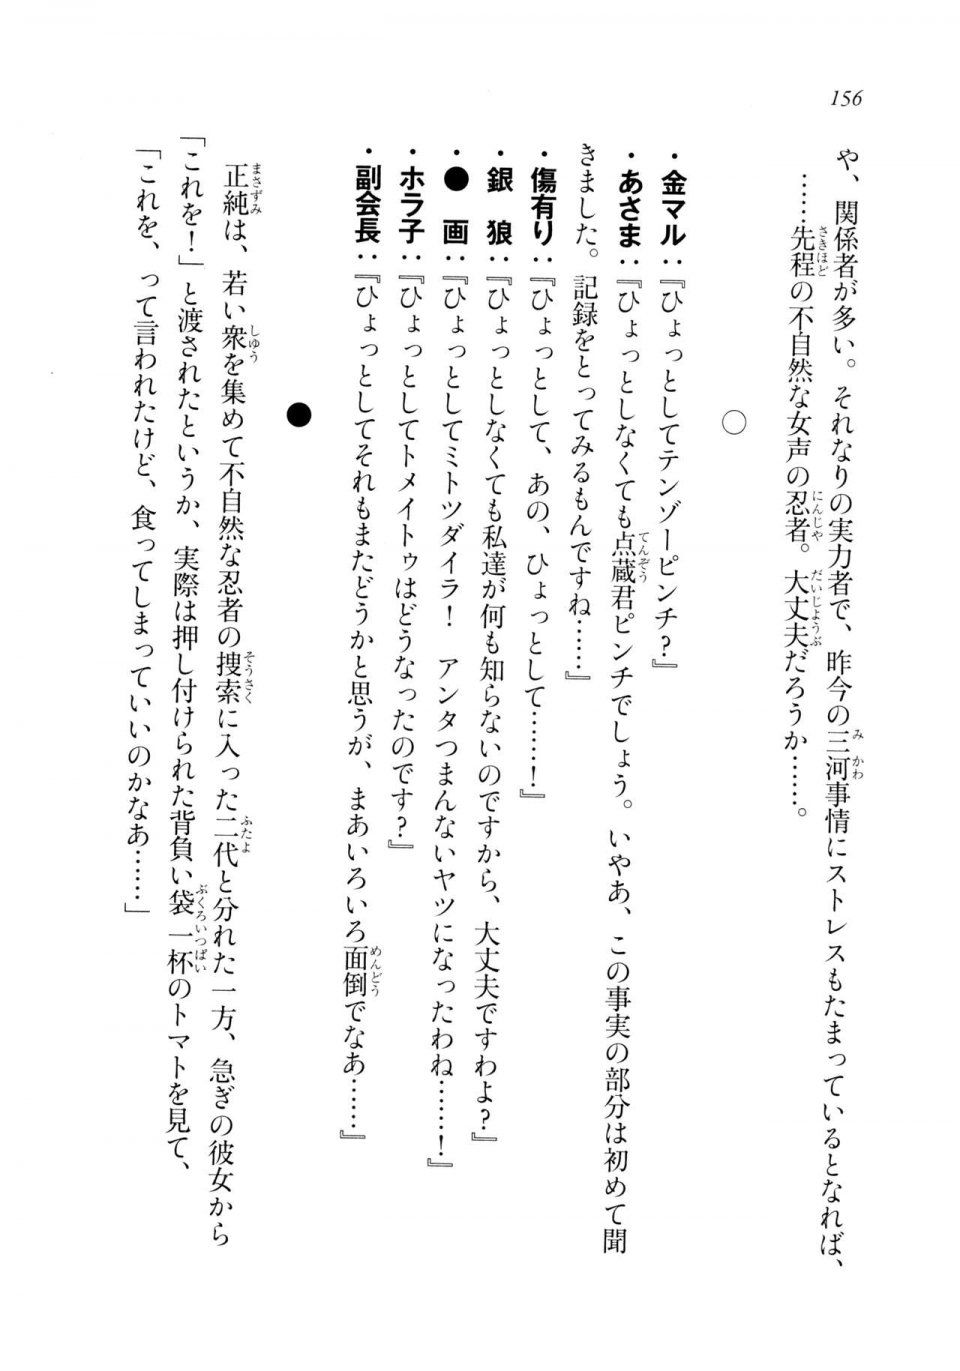 Kyoukai Senjou no Horizon LN Sidestory Vol 2 - Photo #154